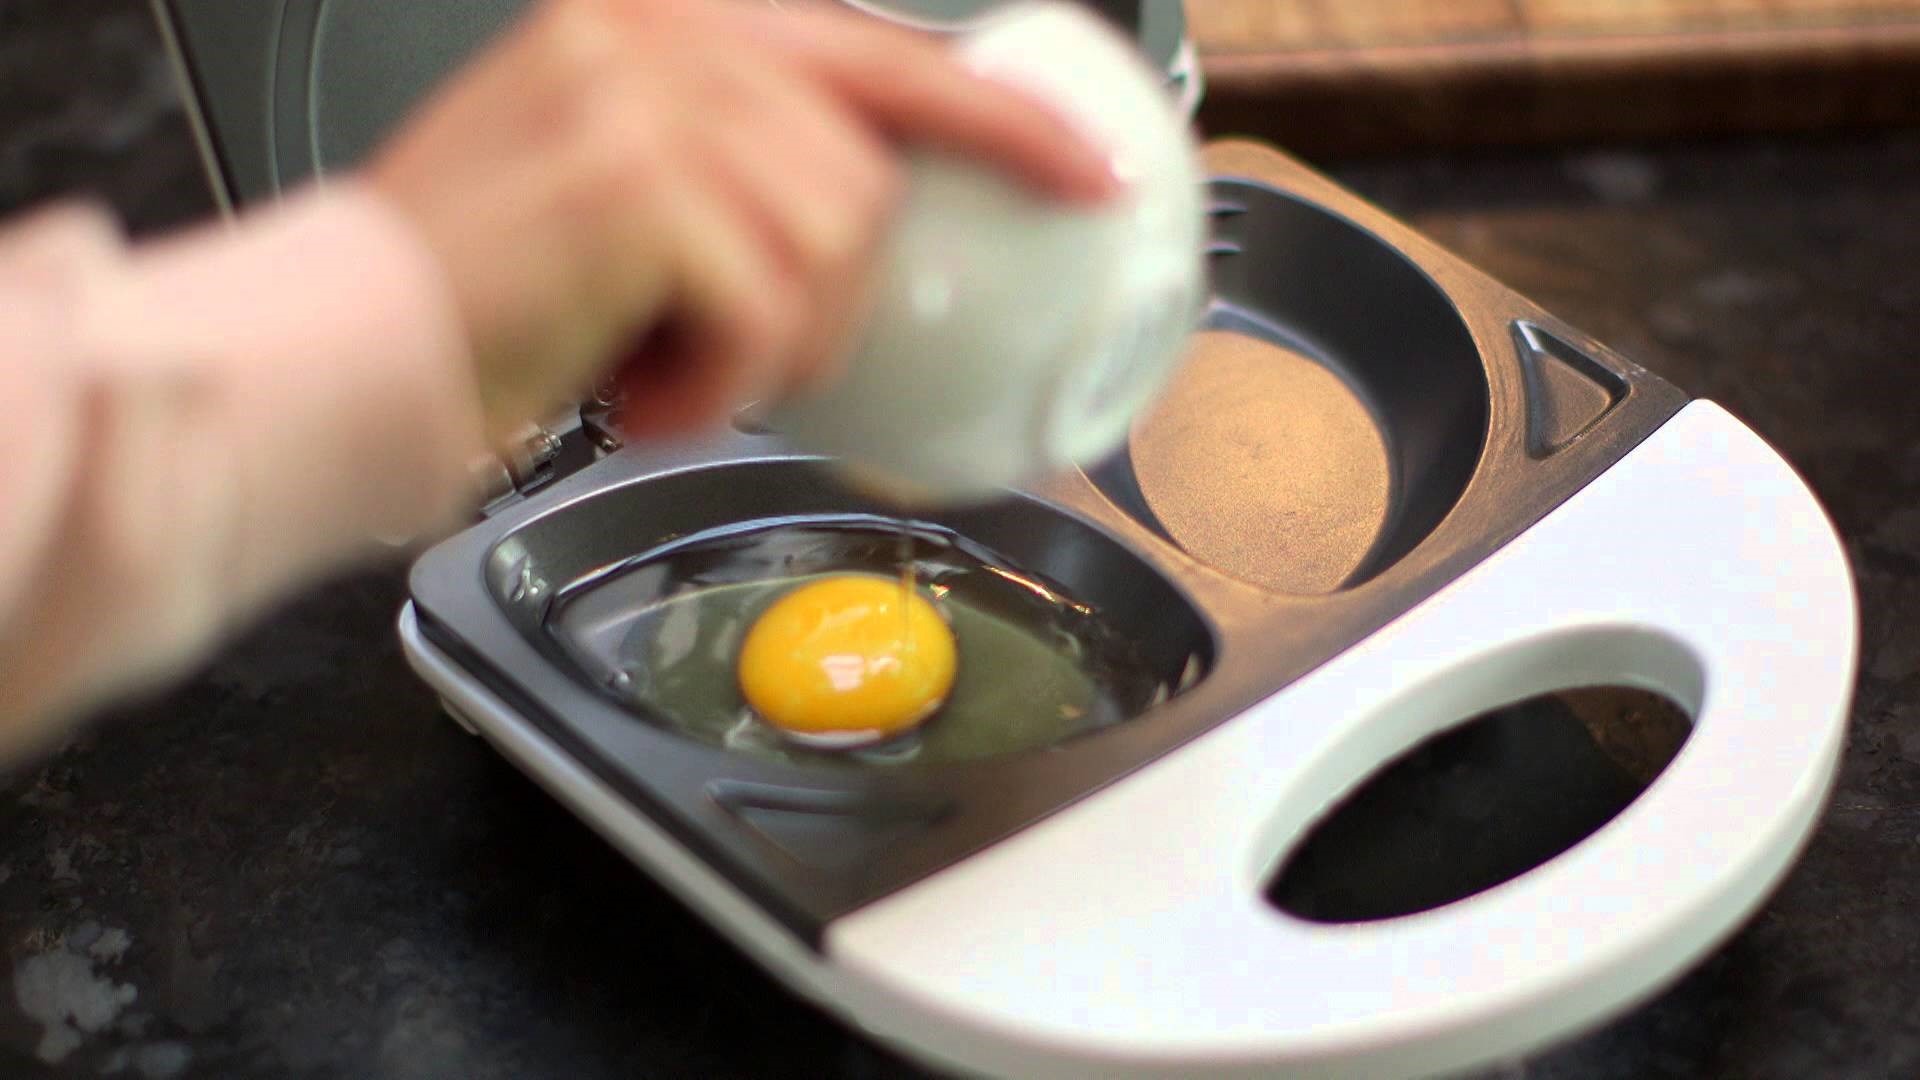 Omelette maker reviews- why omelette makers are best? egg